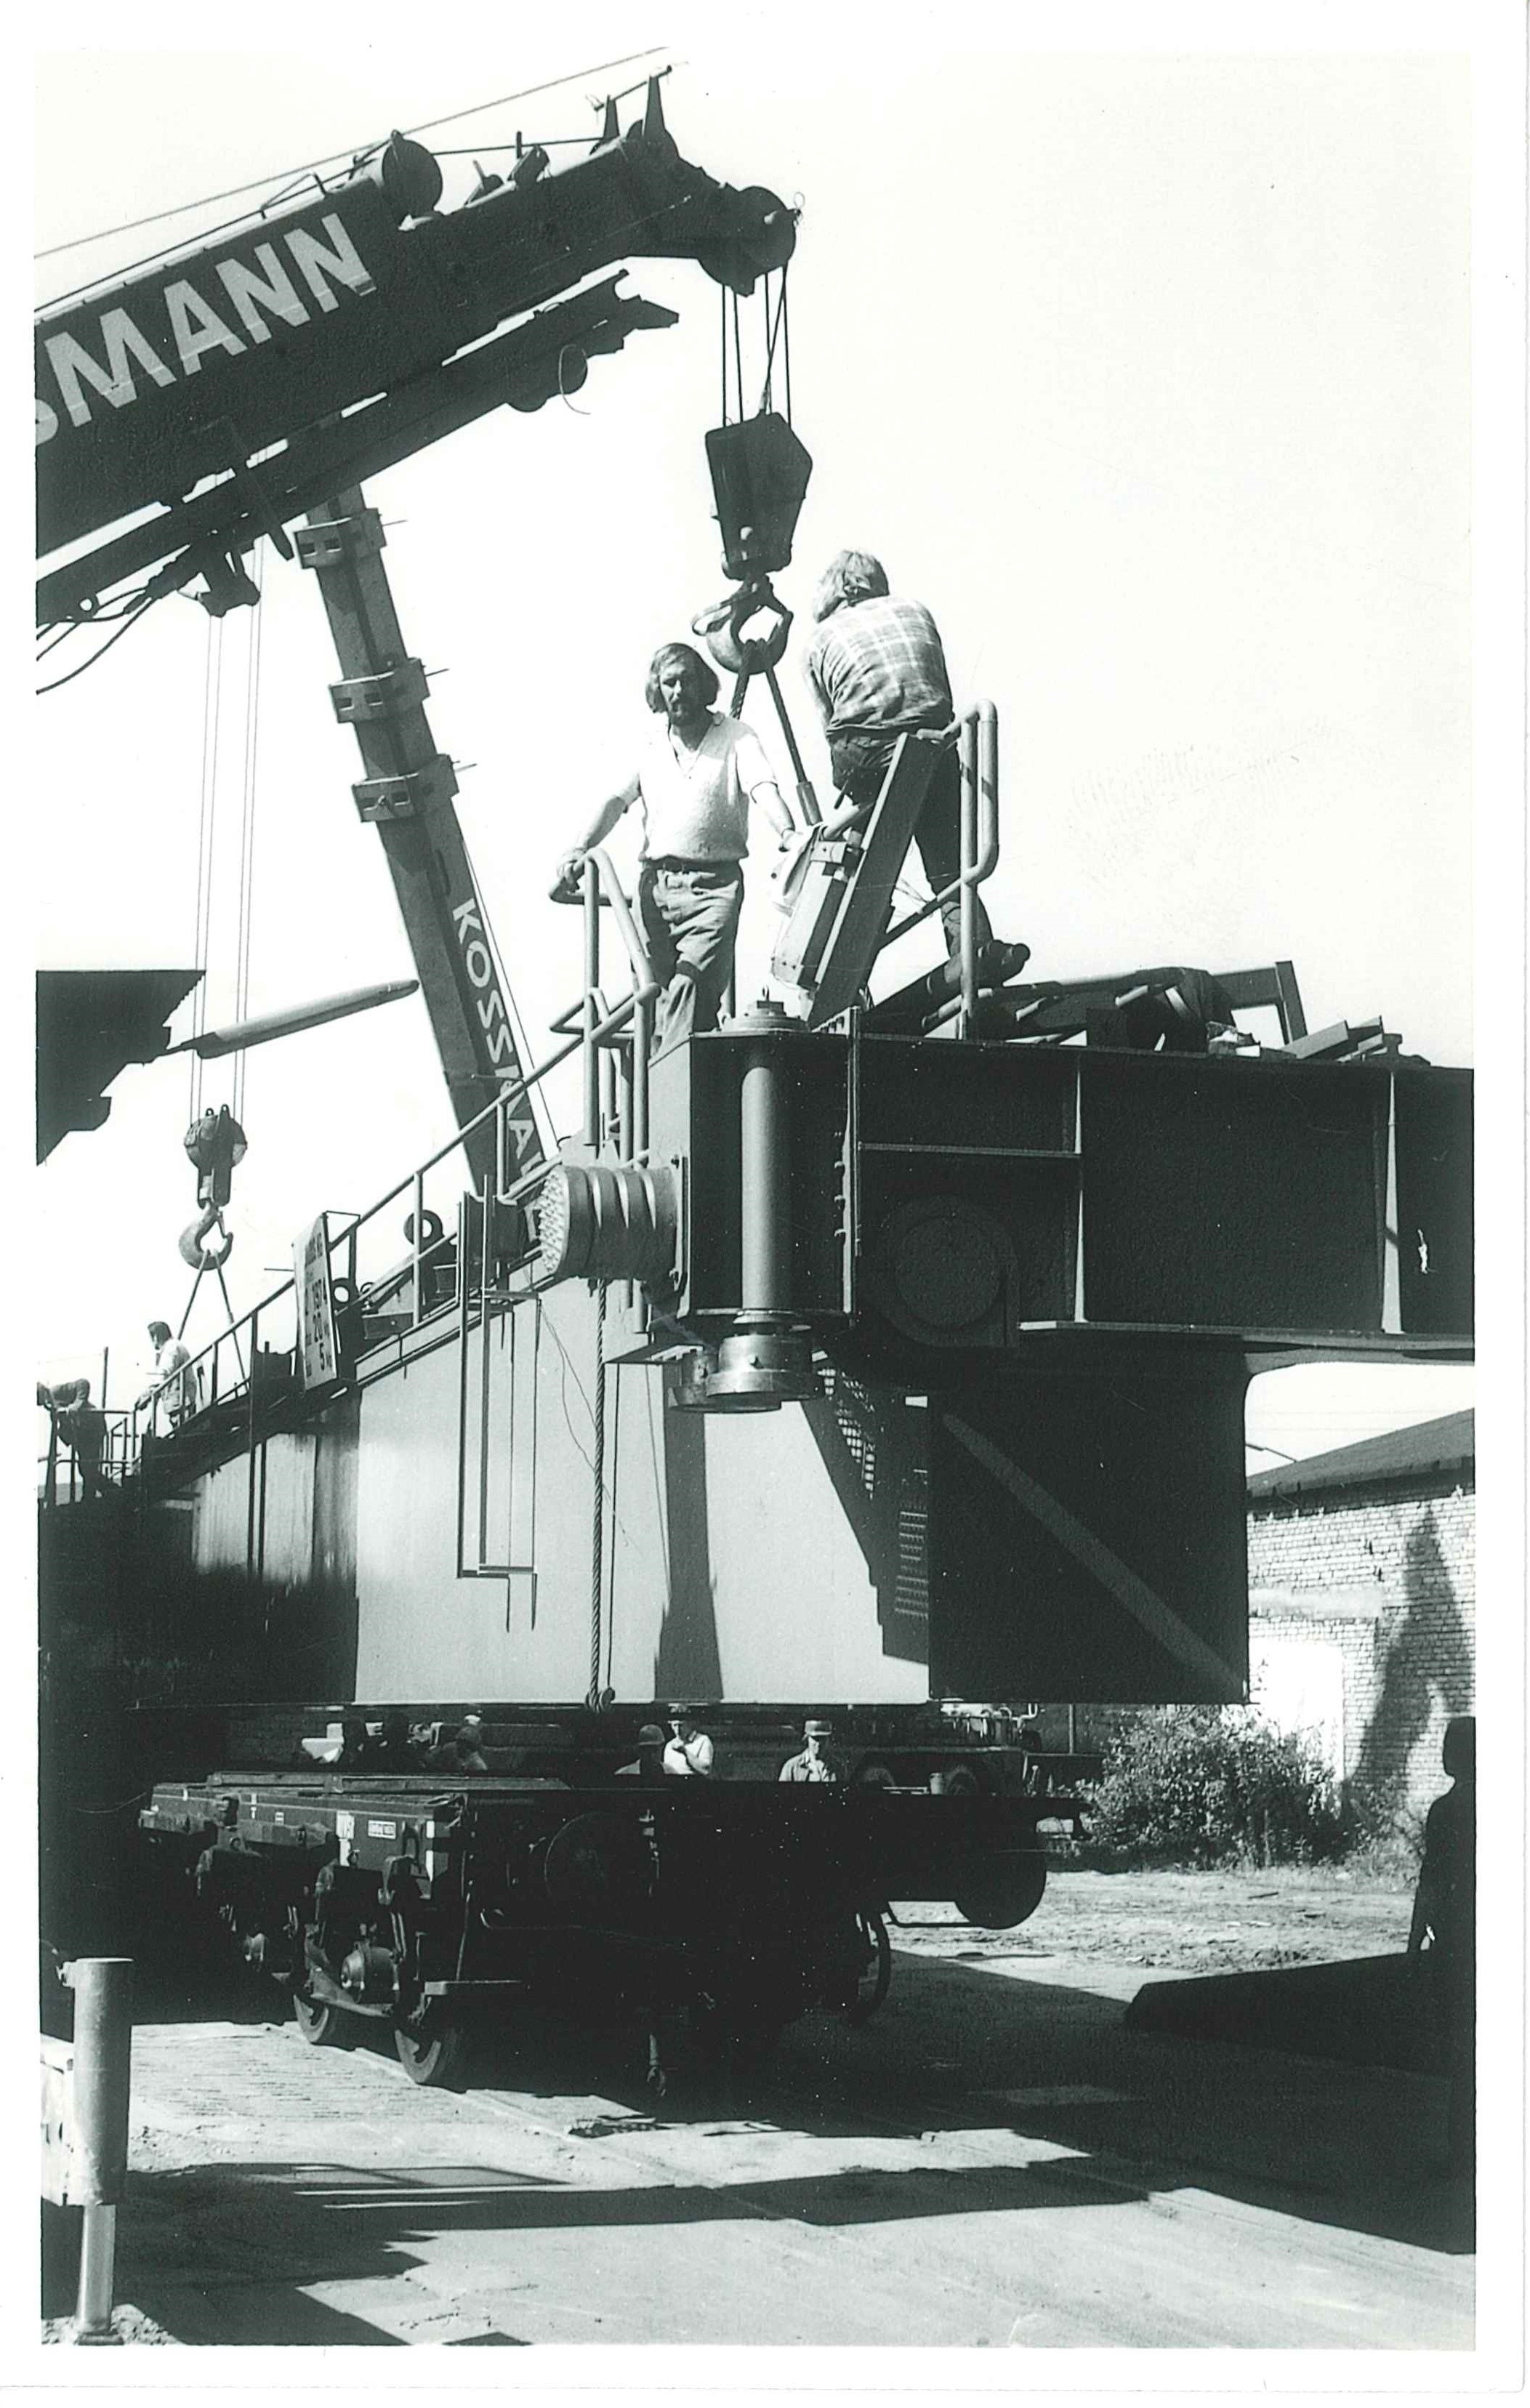 Anlieferung von Bauteilen in die Concordia-Hütte in Mülhofen, 1974 (REM CC BY-NC-SA)